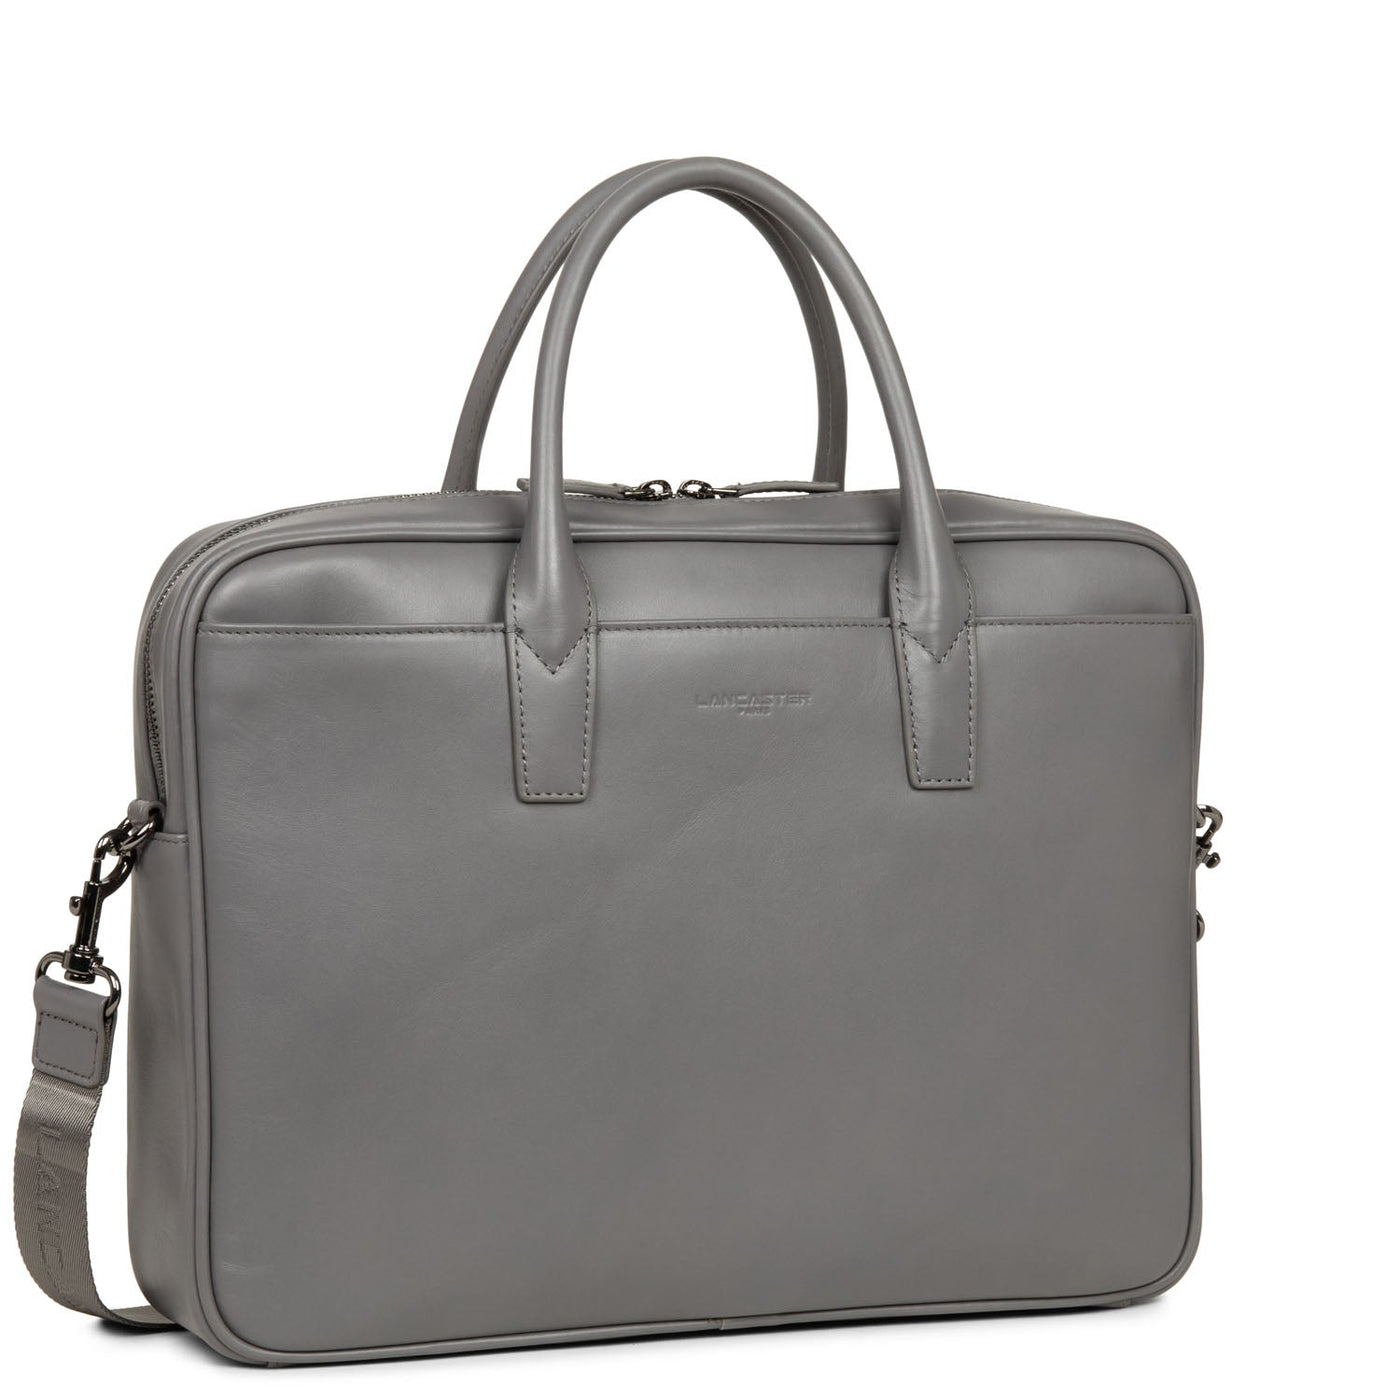 portfolio document holder bag - capital #couleur_gris